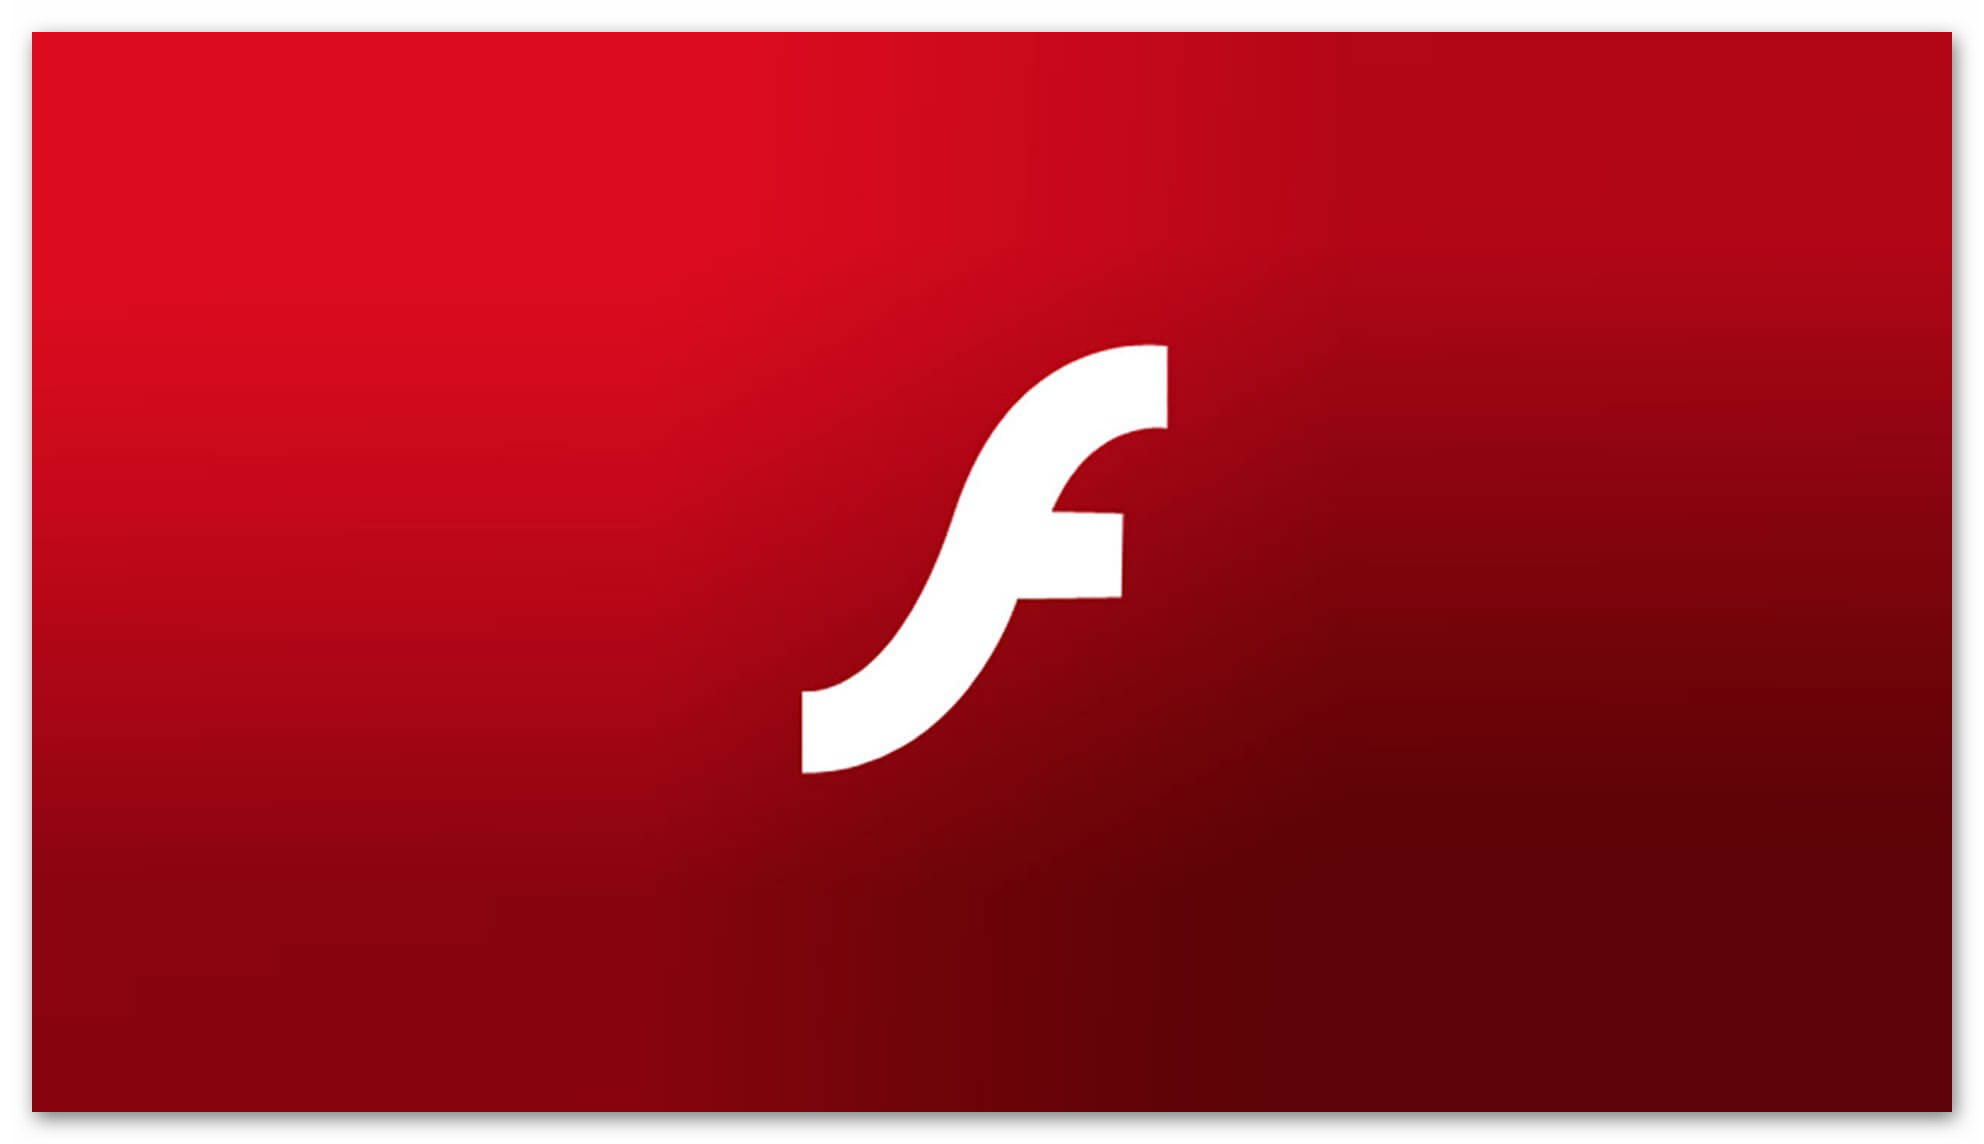 Изображение Adobe Flash Player